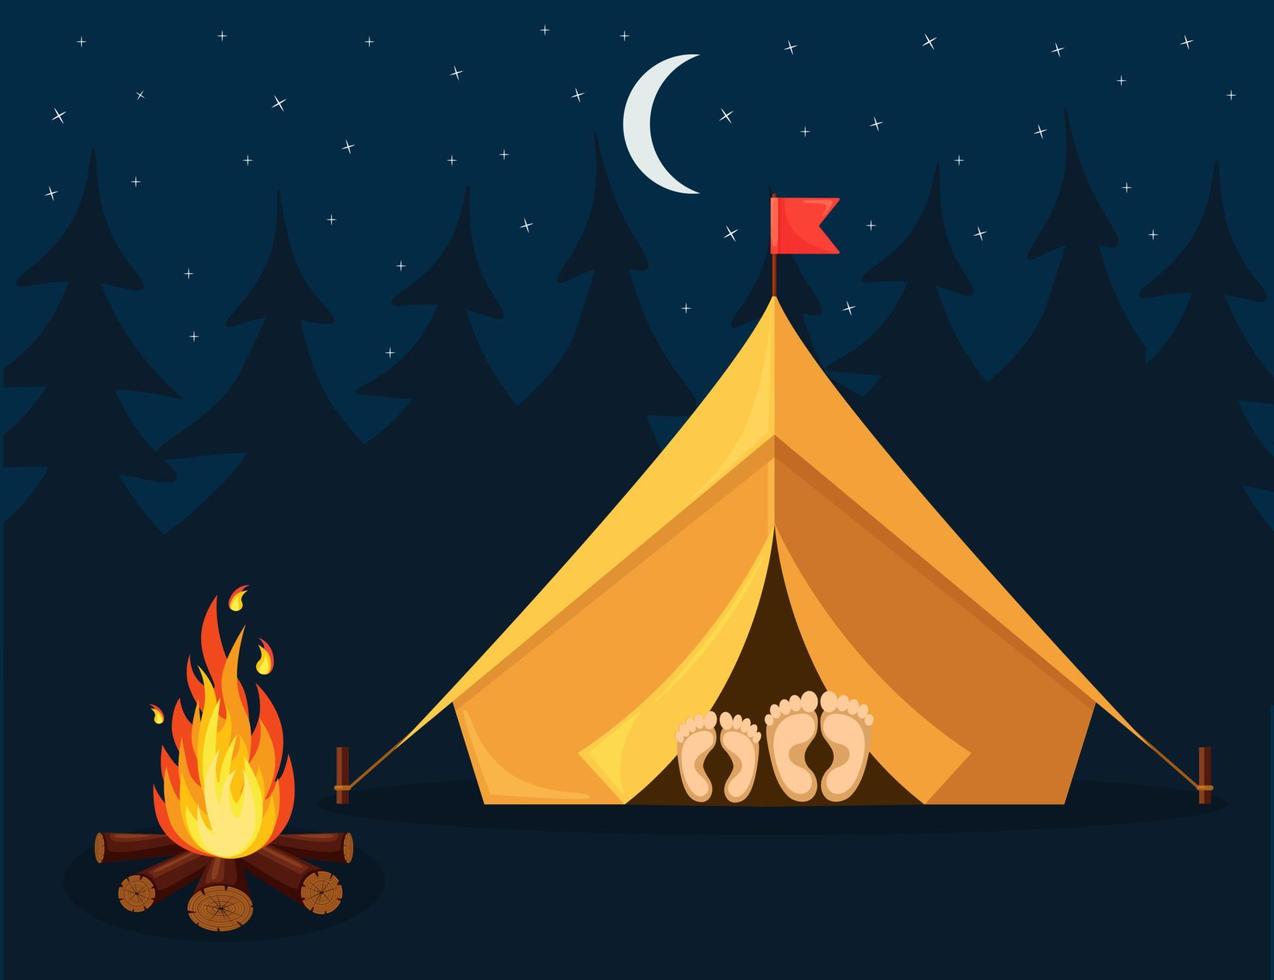 nattlandskap med tält, lägereld, skog. sommarläger, naturturism. camping eller vandring koncept. vektor design